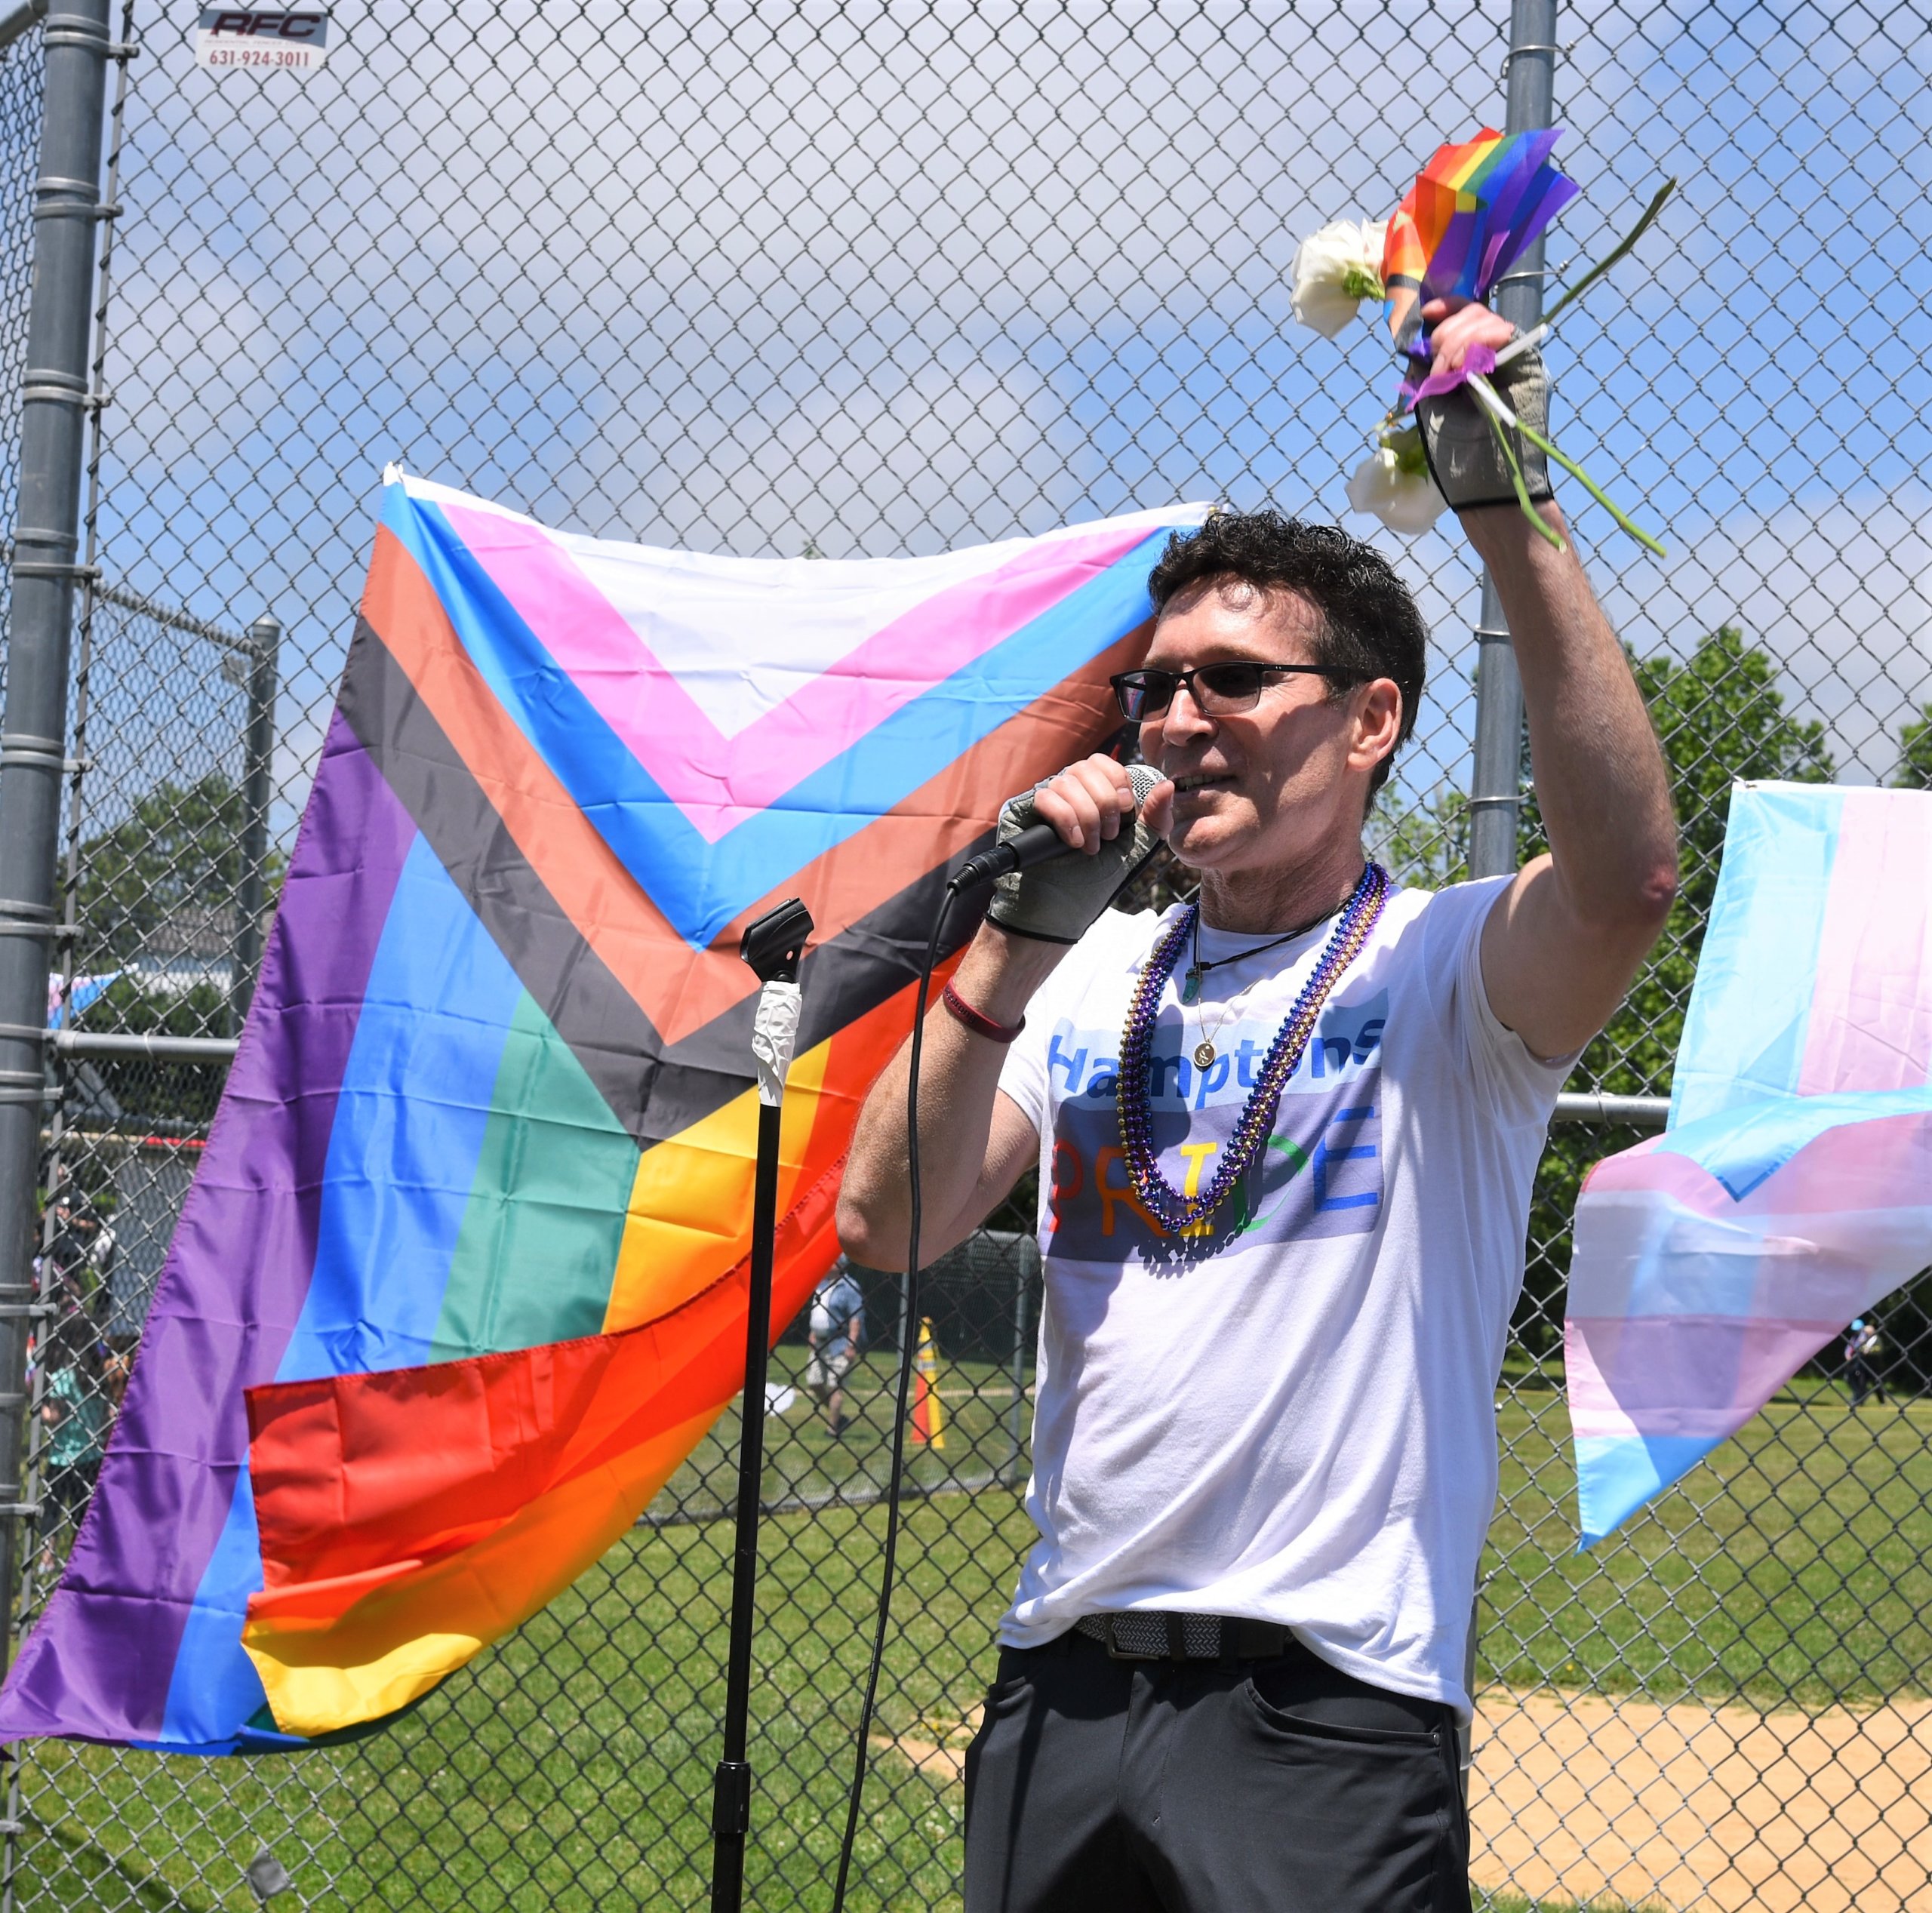 Hamptons Pride Parade organizer Tom House